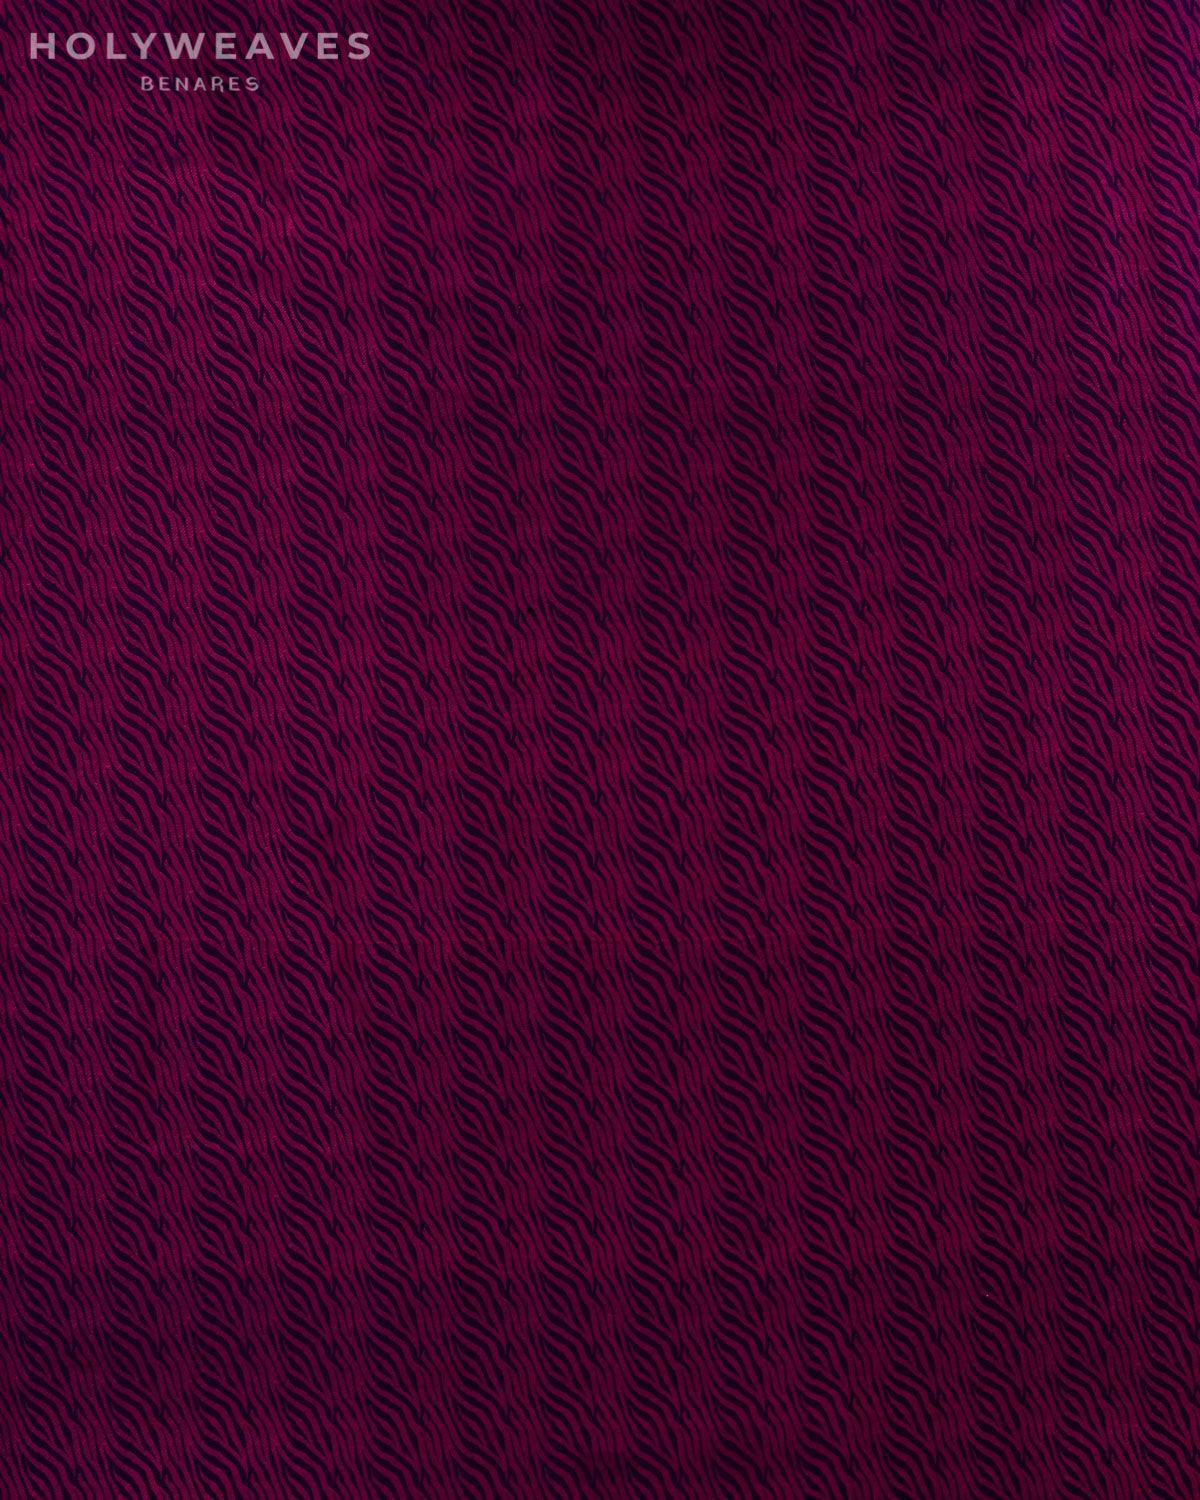 Magenta on Purple Banarasi Animal Stripes Resham Tanchoi Handwoven Katan Silk Fabric - By HolyWeaves, Benares